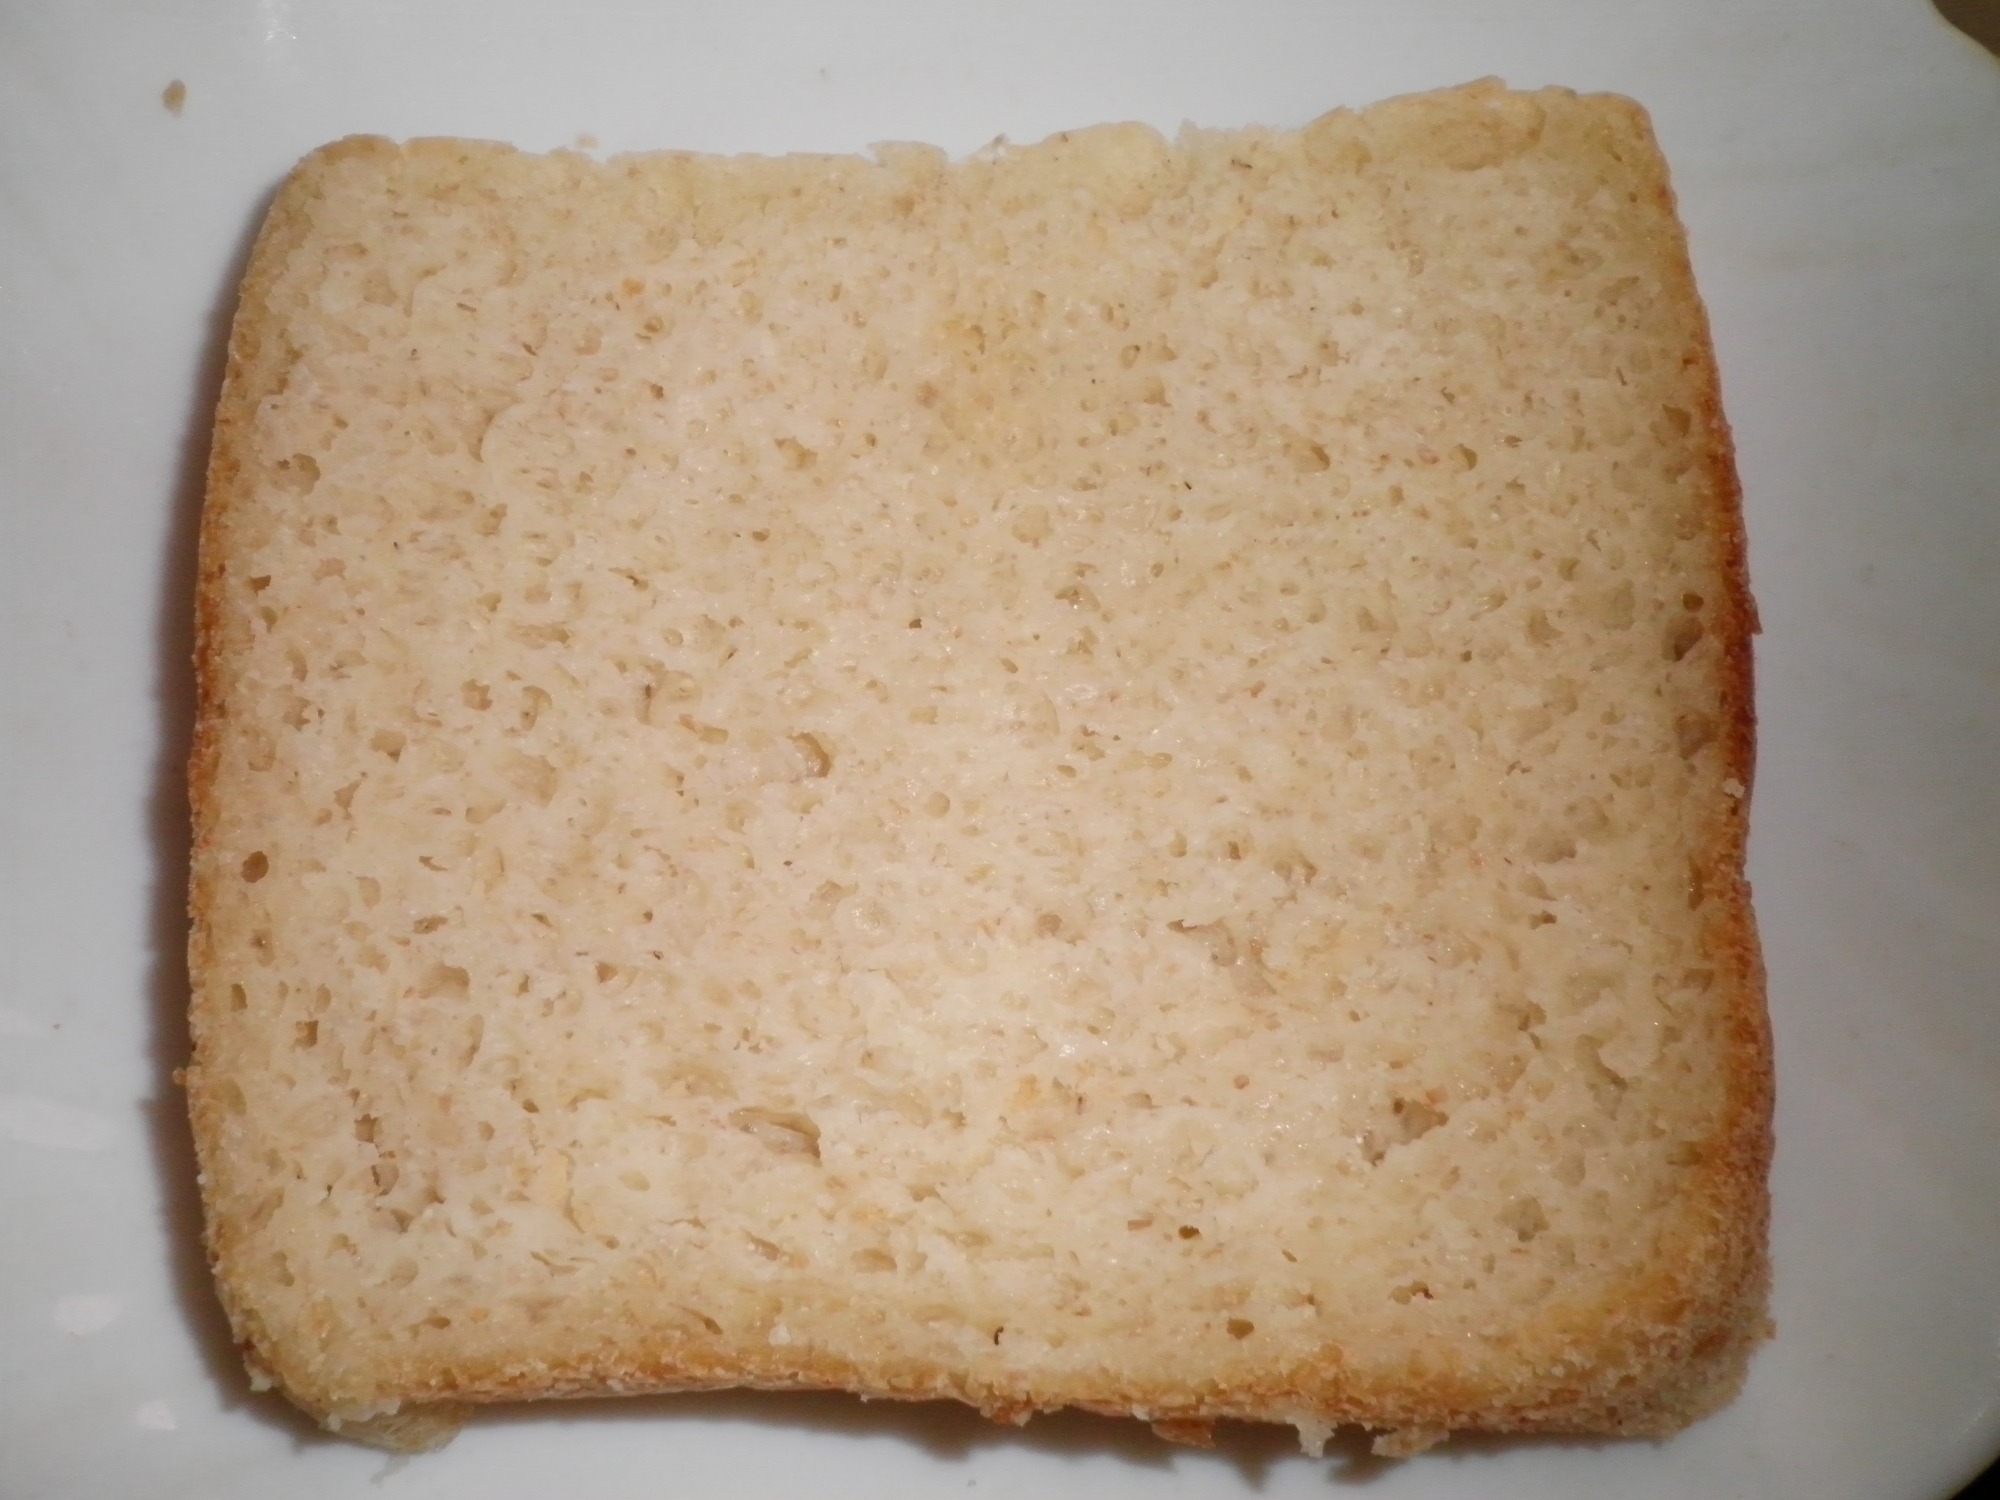 低塩ライ麦食パン